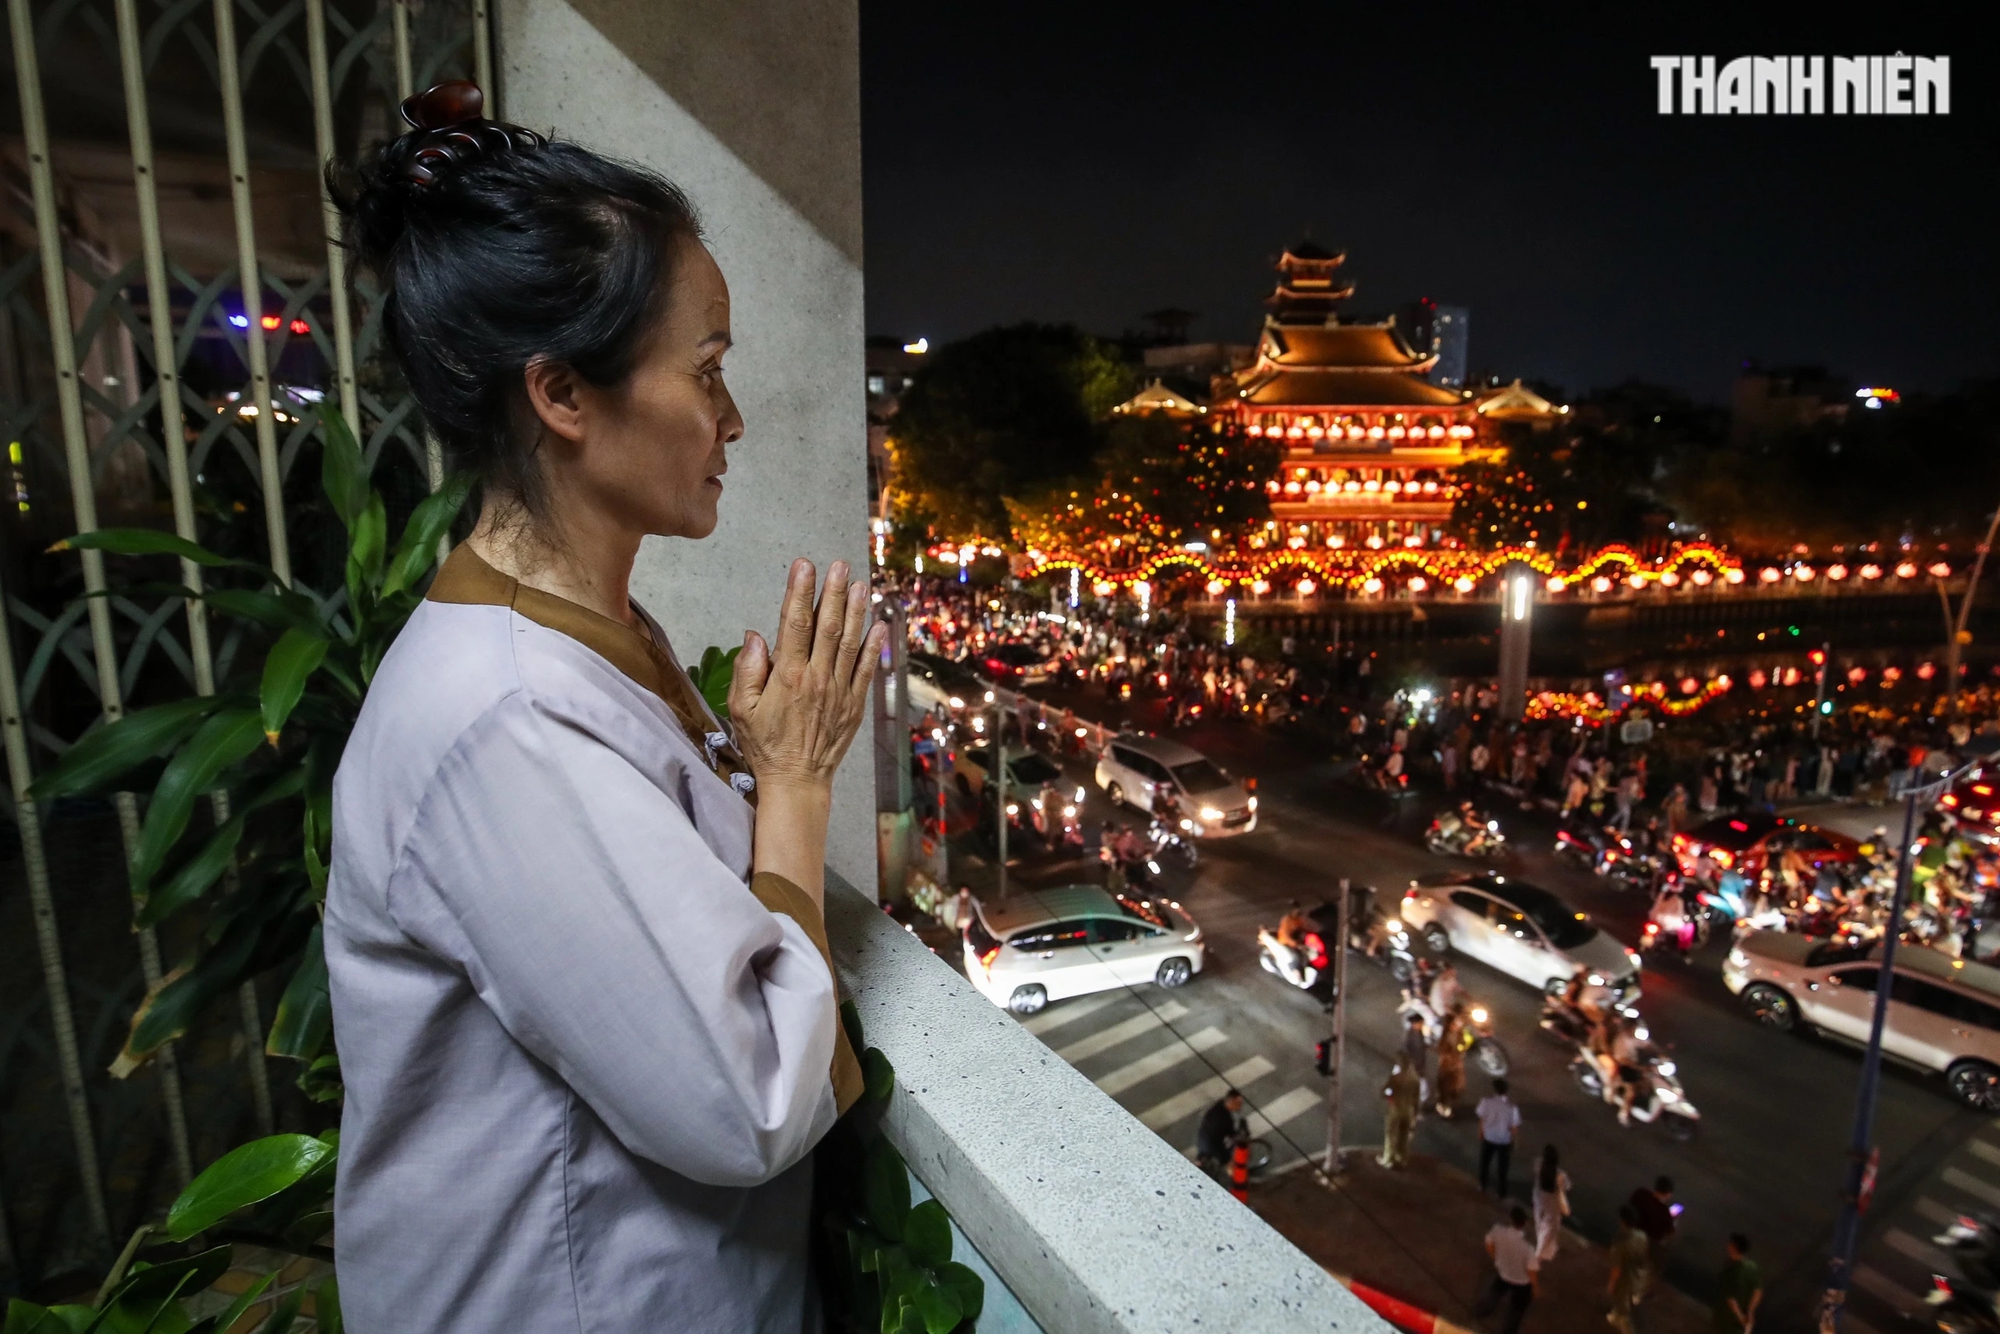 Cô Nga Nguyễn cho biết hằng năm cô đều dự lễ thả hoa đăng tại chùa Pháp Hoa, nhưng năm nay lượng người về đây đông quá nên cô tìm đến chung cư gần đó có góc cao để xem hoa đăng